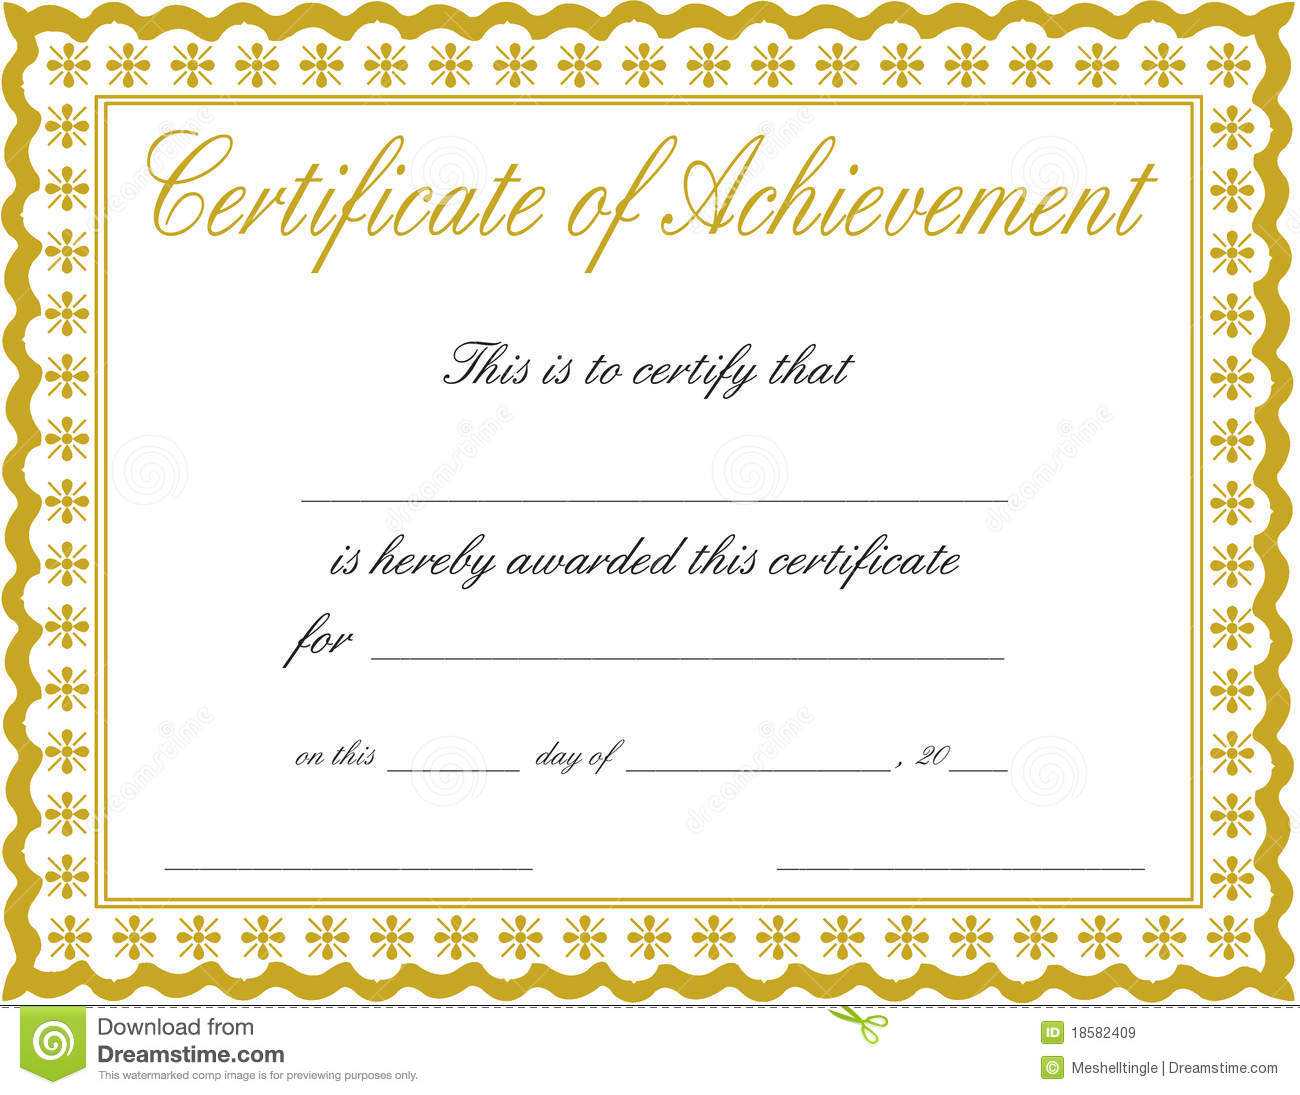 Docx Achievement Certificates Templates Free Certificate Of With Regard To Word Template Certificate Of Achievement